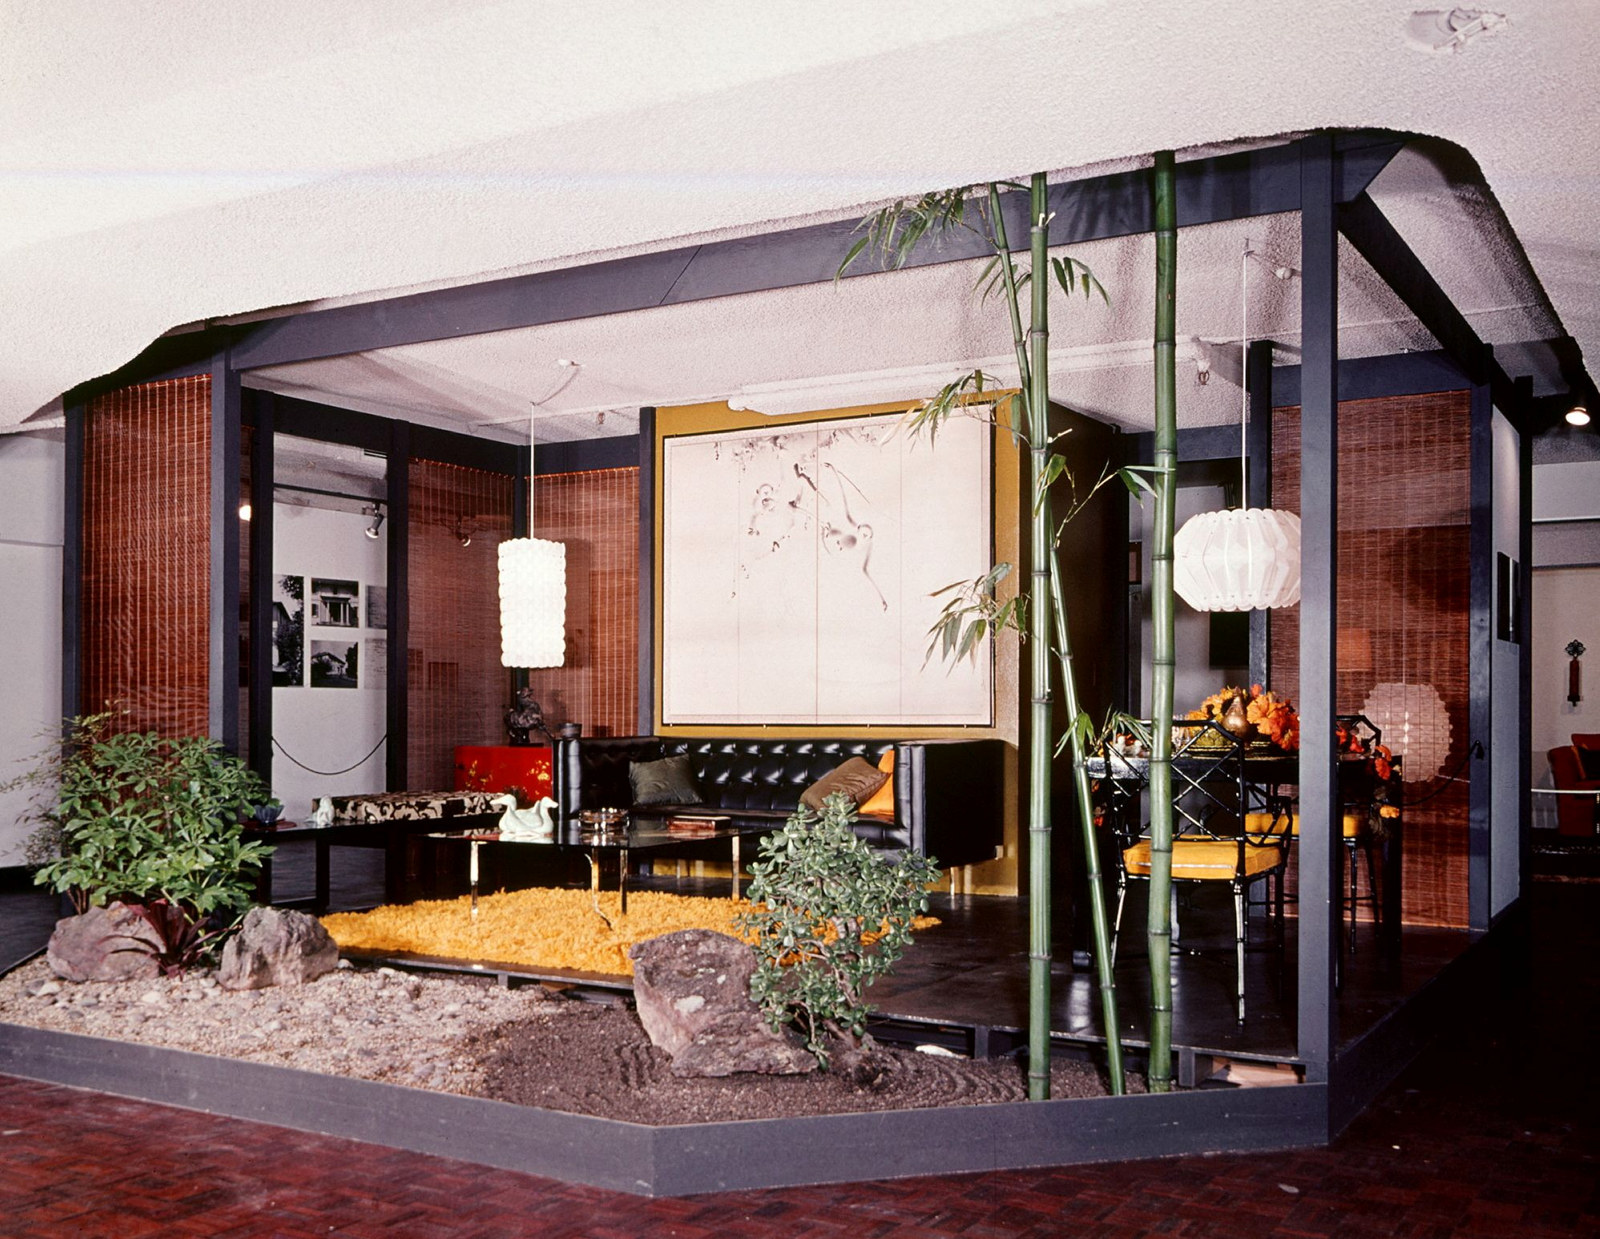 An indoor-outdoor room with Oriental overtones for Mr Bill Northam